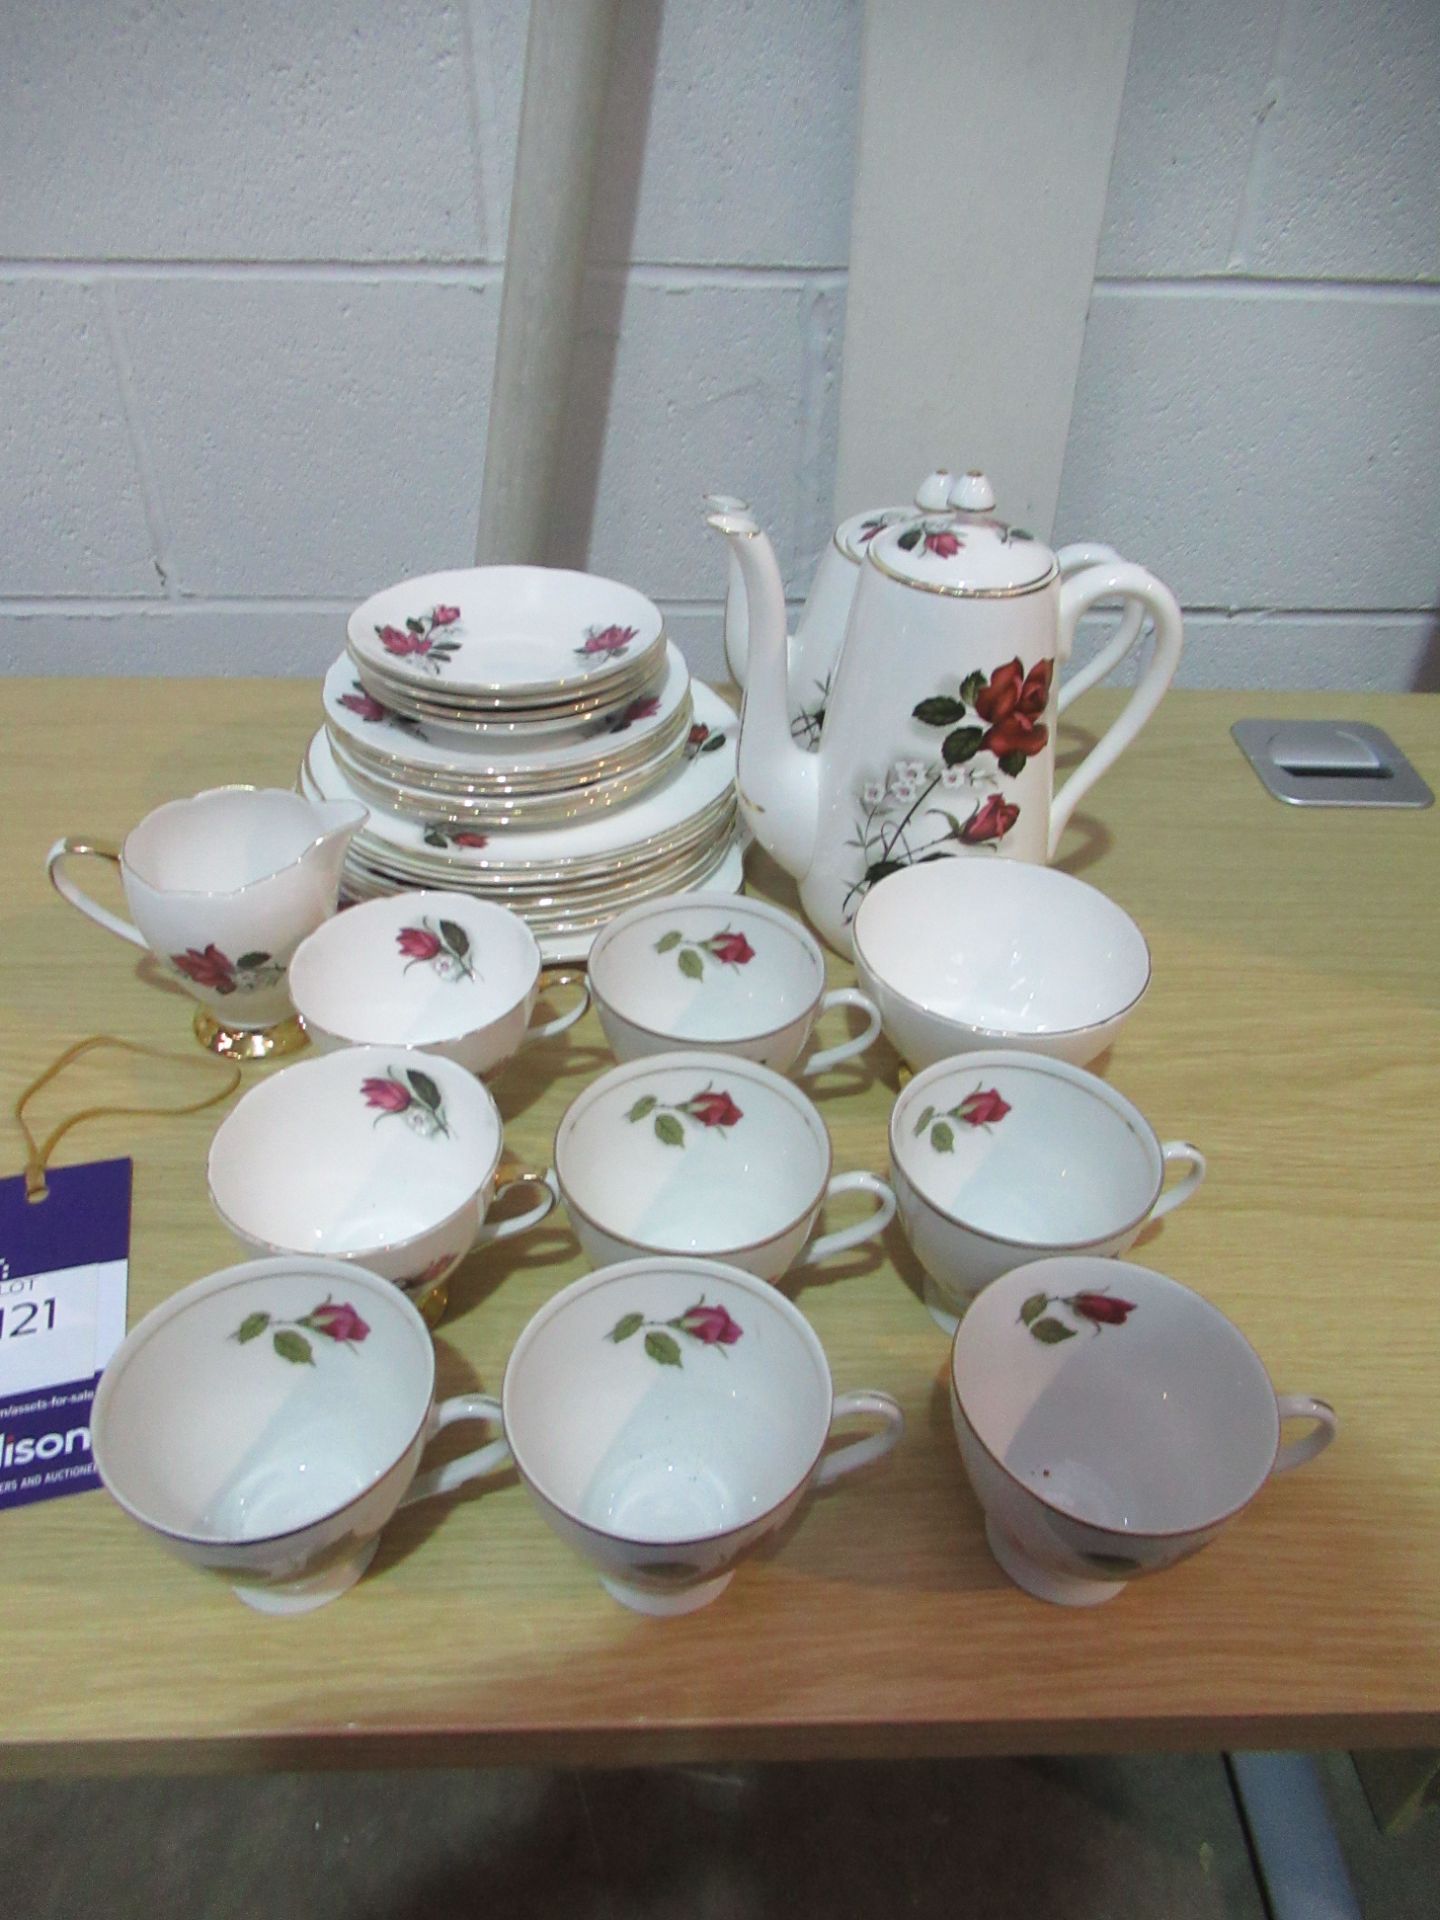 Rose Adorned Tea Service inc. Plates, Teacups, Teapot etc.